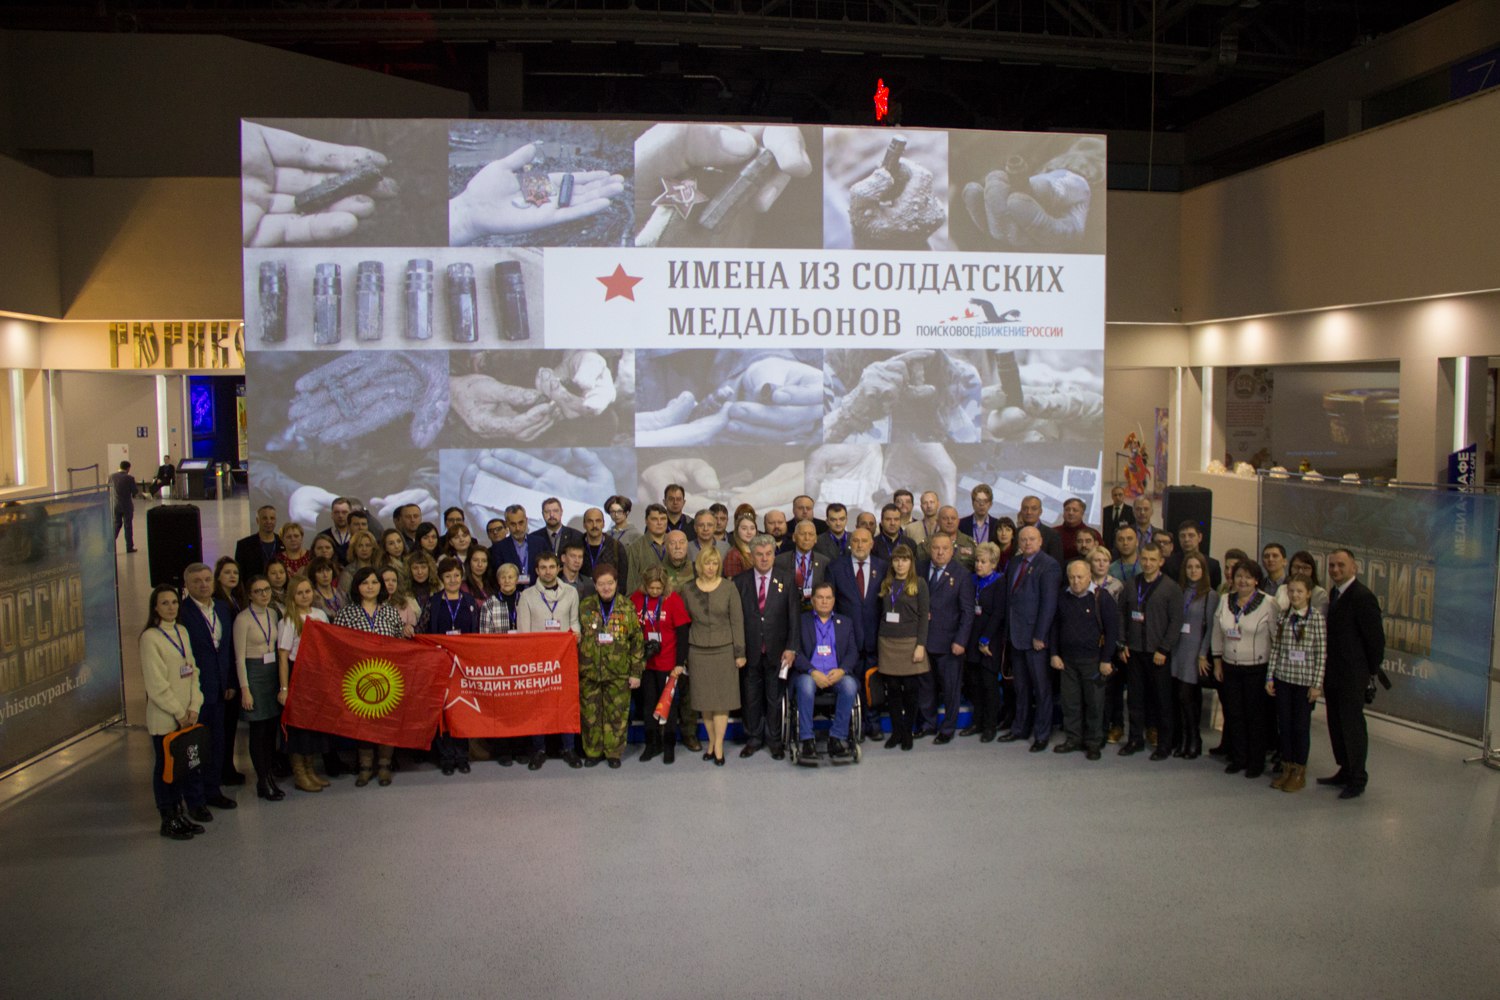 Представители 11 государств собрались на международной конференции поисковиков и военных историков